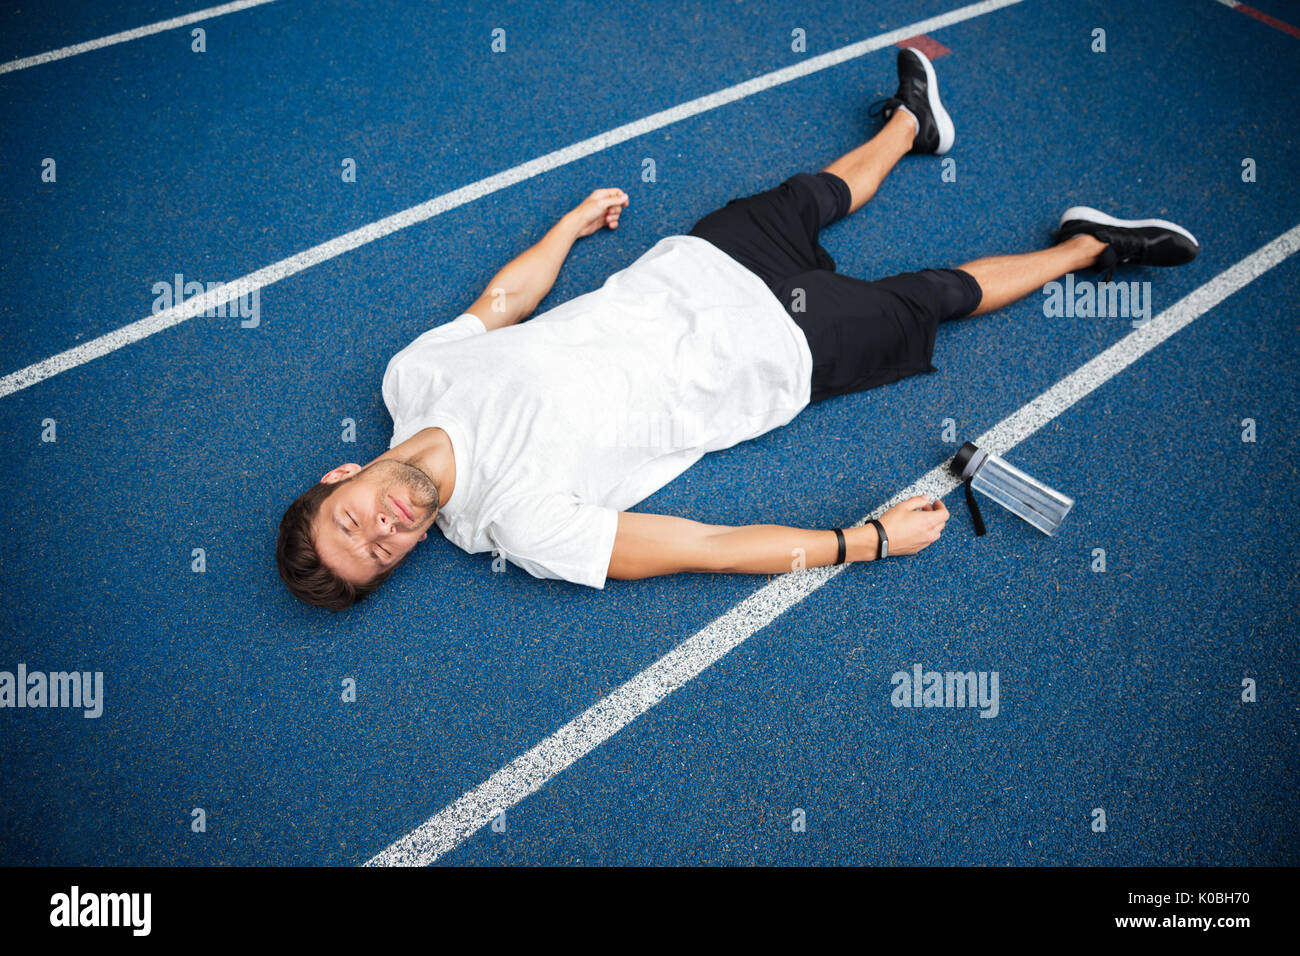 Груз лежит на доске. Уставший спортсмен. Спортсмен лежит. Спортсмен лежит на полу. Спортсмен валяется.